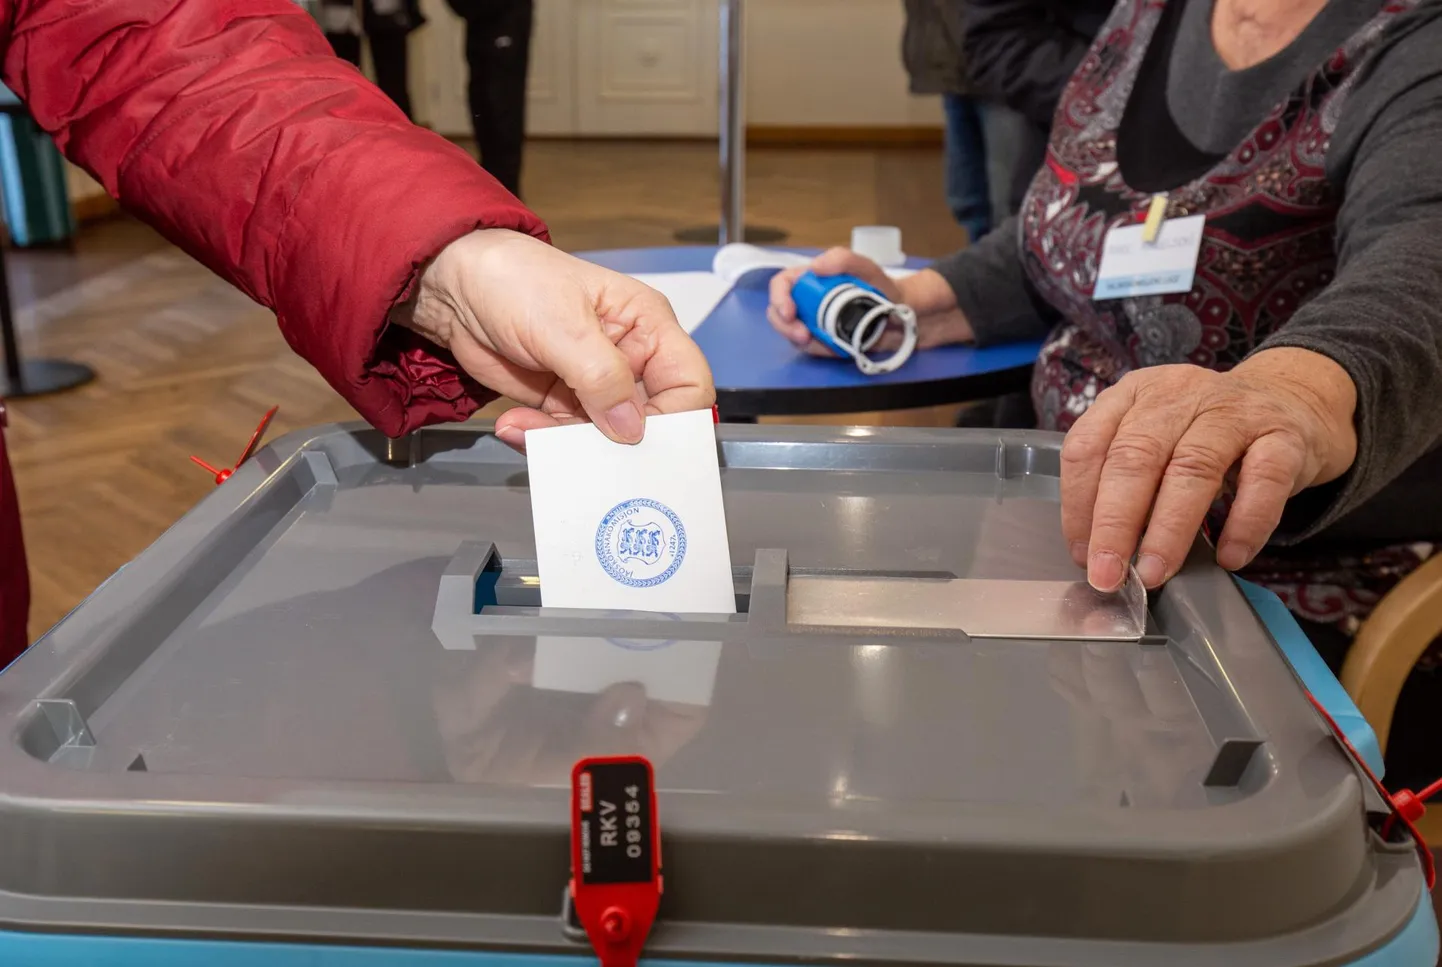 Viljandi maakonnas oli neljapäeva pärastlõunaks käinud pabersedeliga hääletamas üle 2000 inimese ning pooled neist olid seda teinud Viljandi linnas.